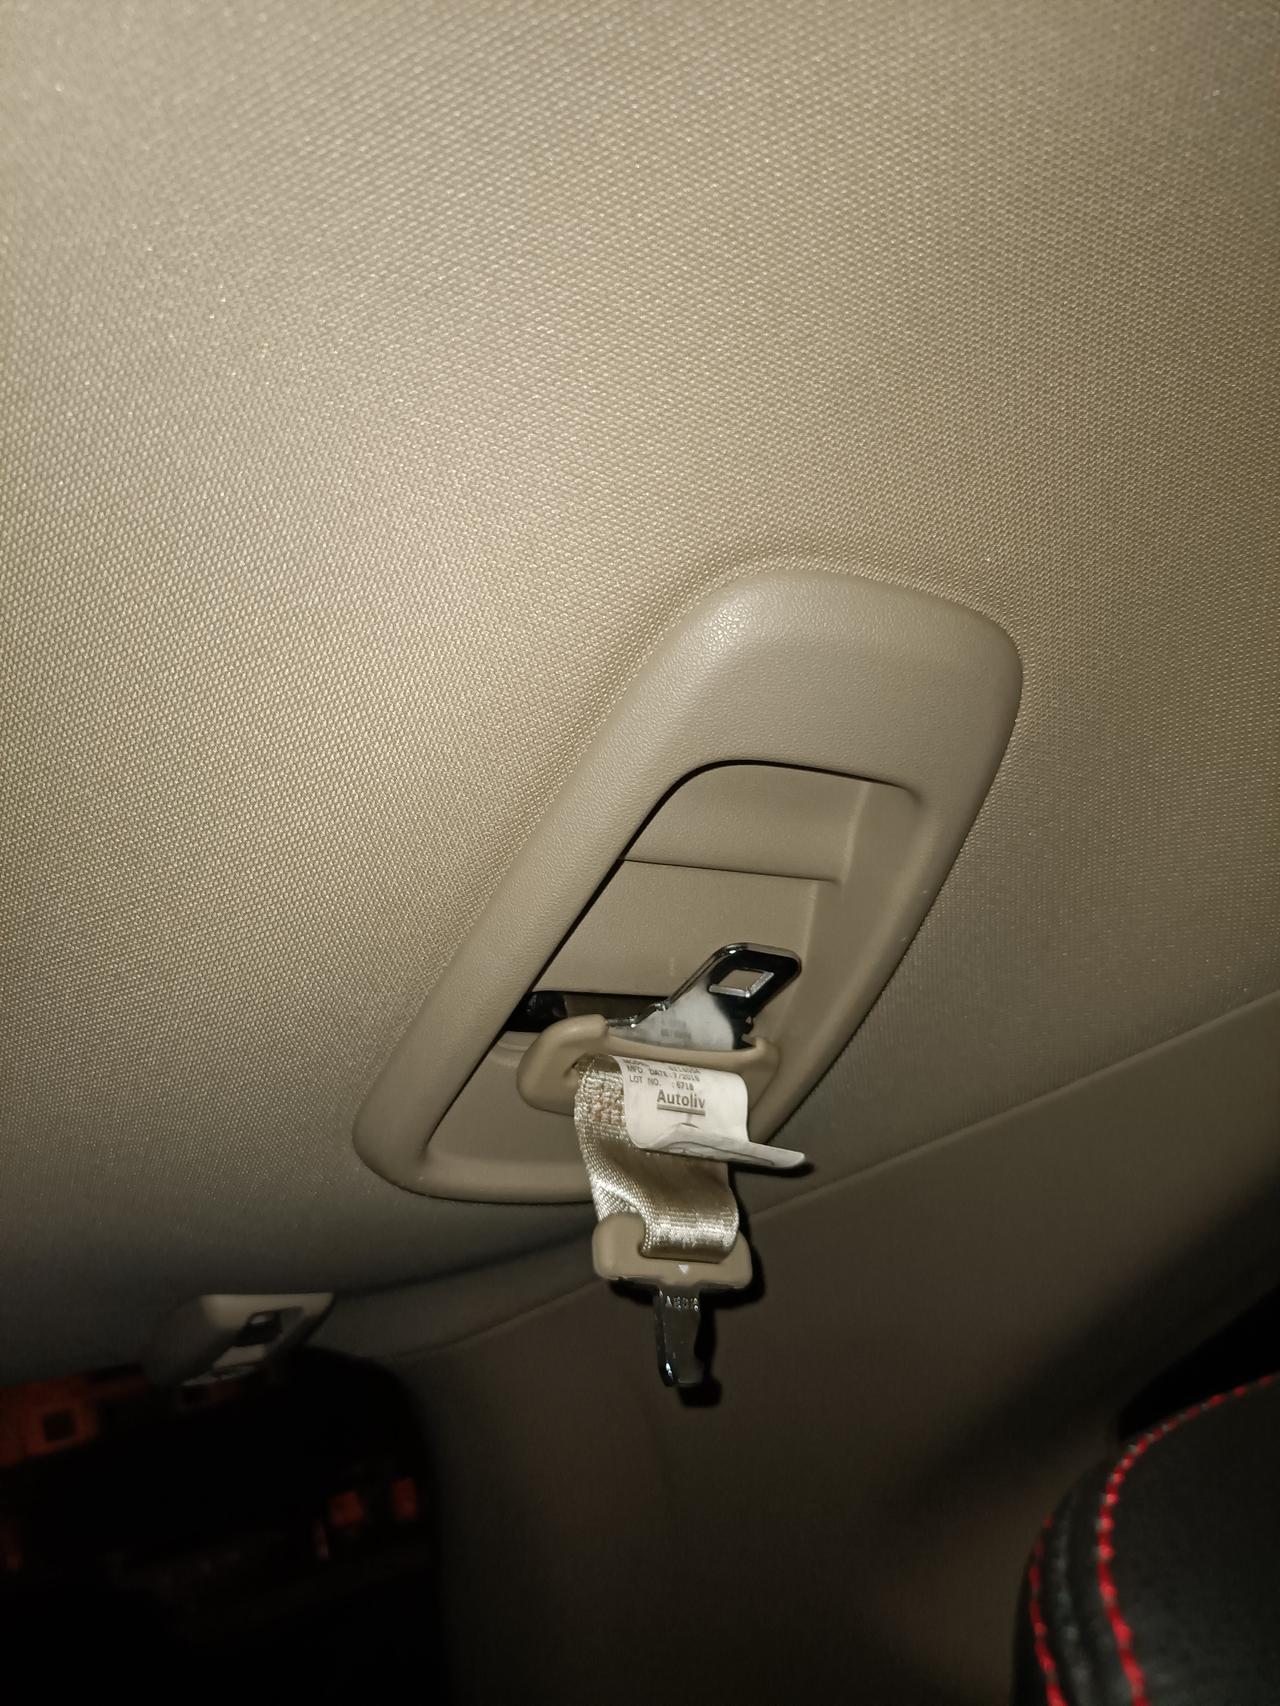 本田CR-V 请问这样的安全座椅插孔适合买哪种安全座椅，急急急！